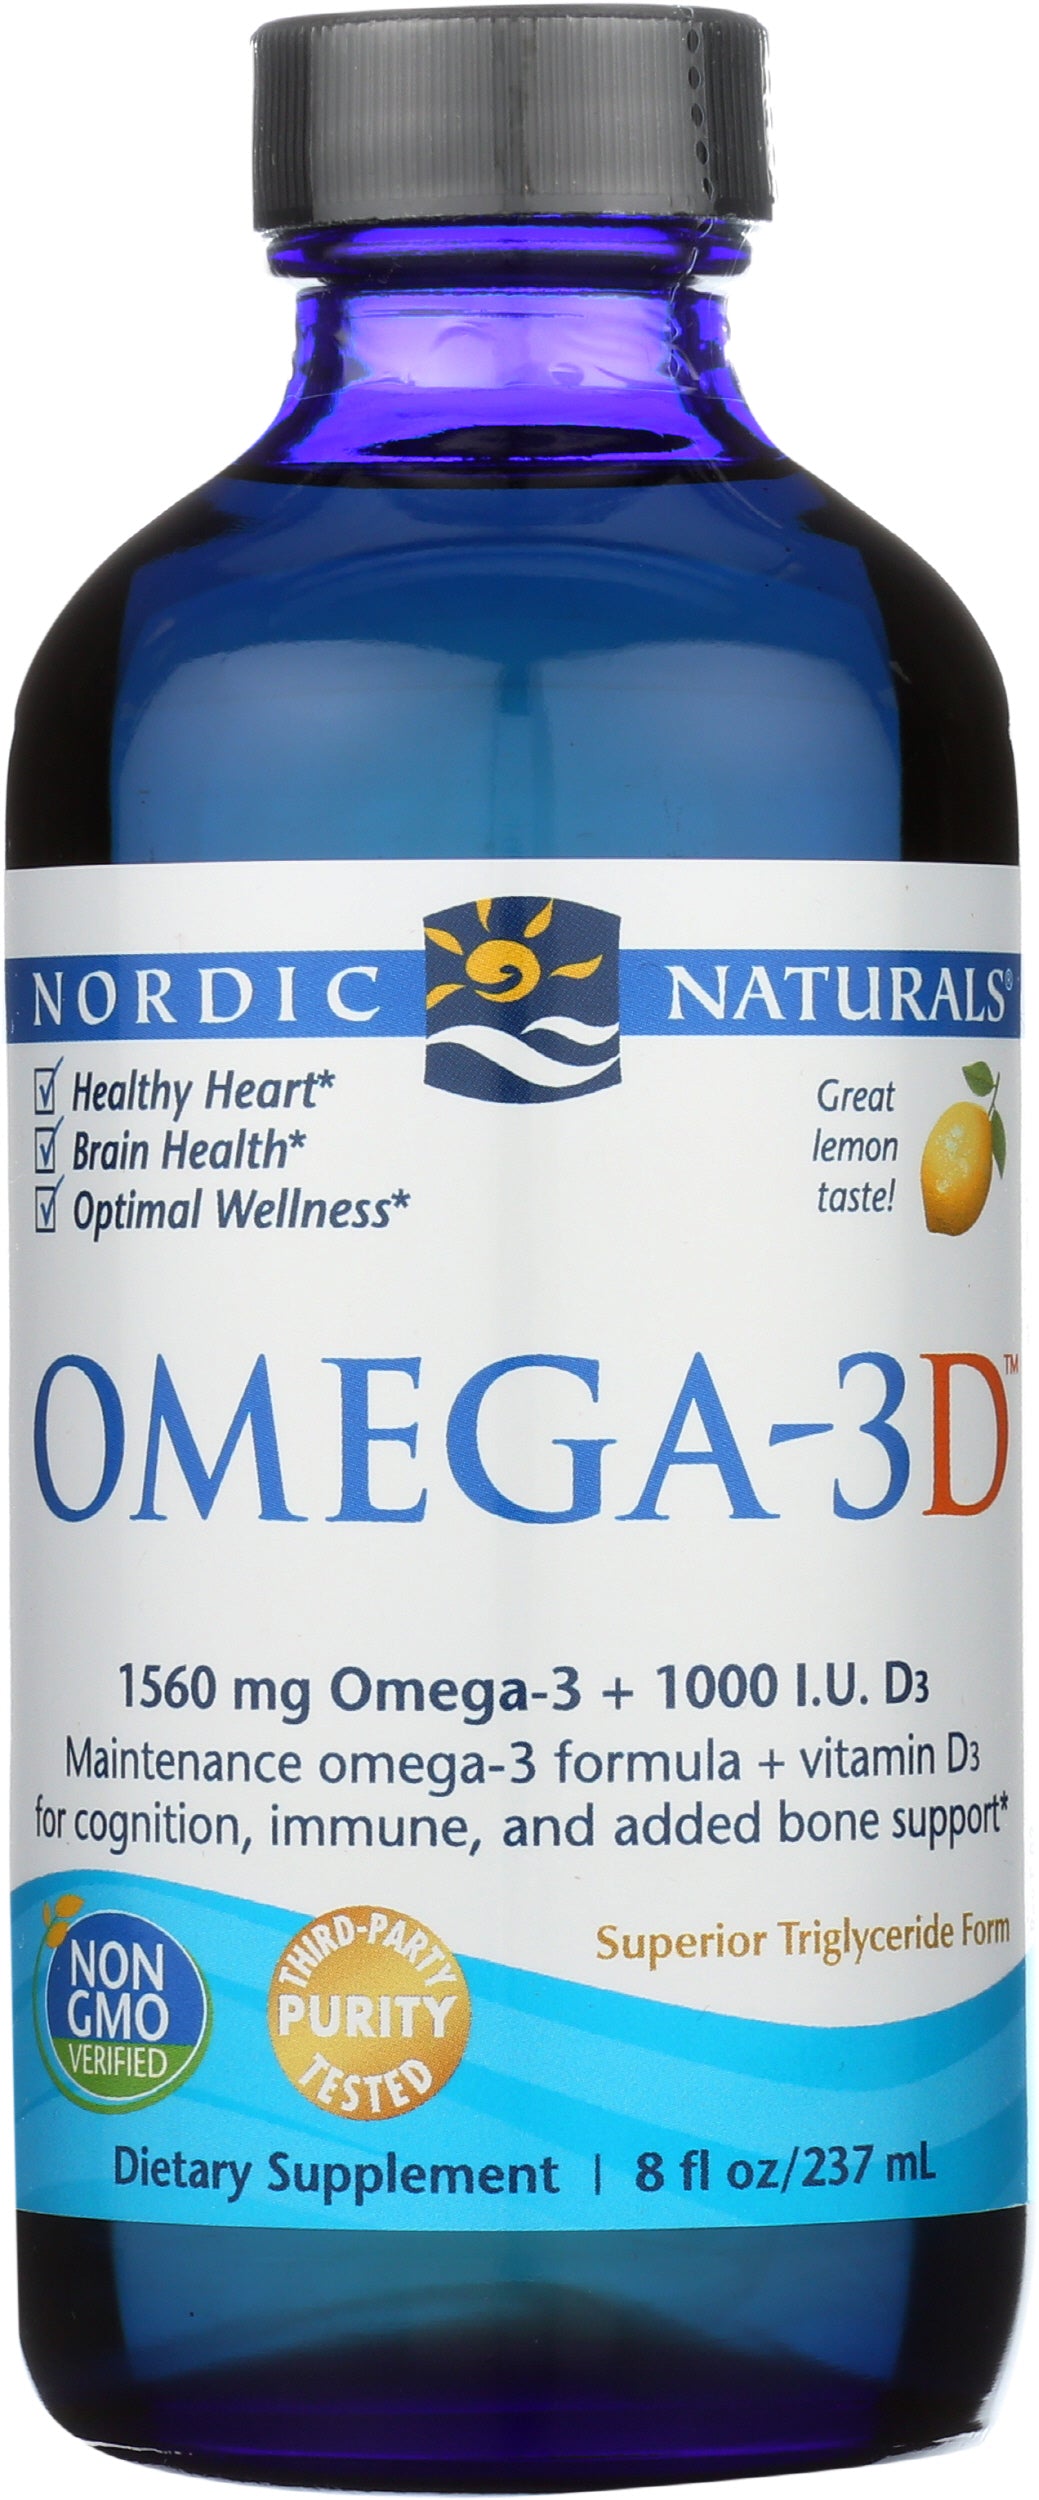 Nordic Naturals Ultimate Omega - Lemon - 8 fl. oz.